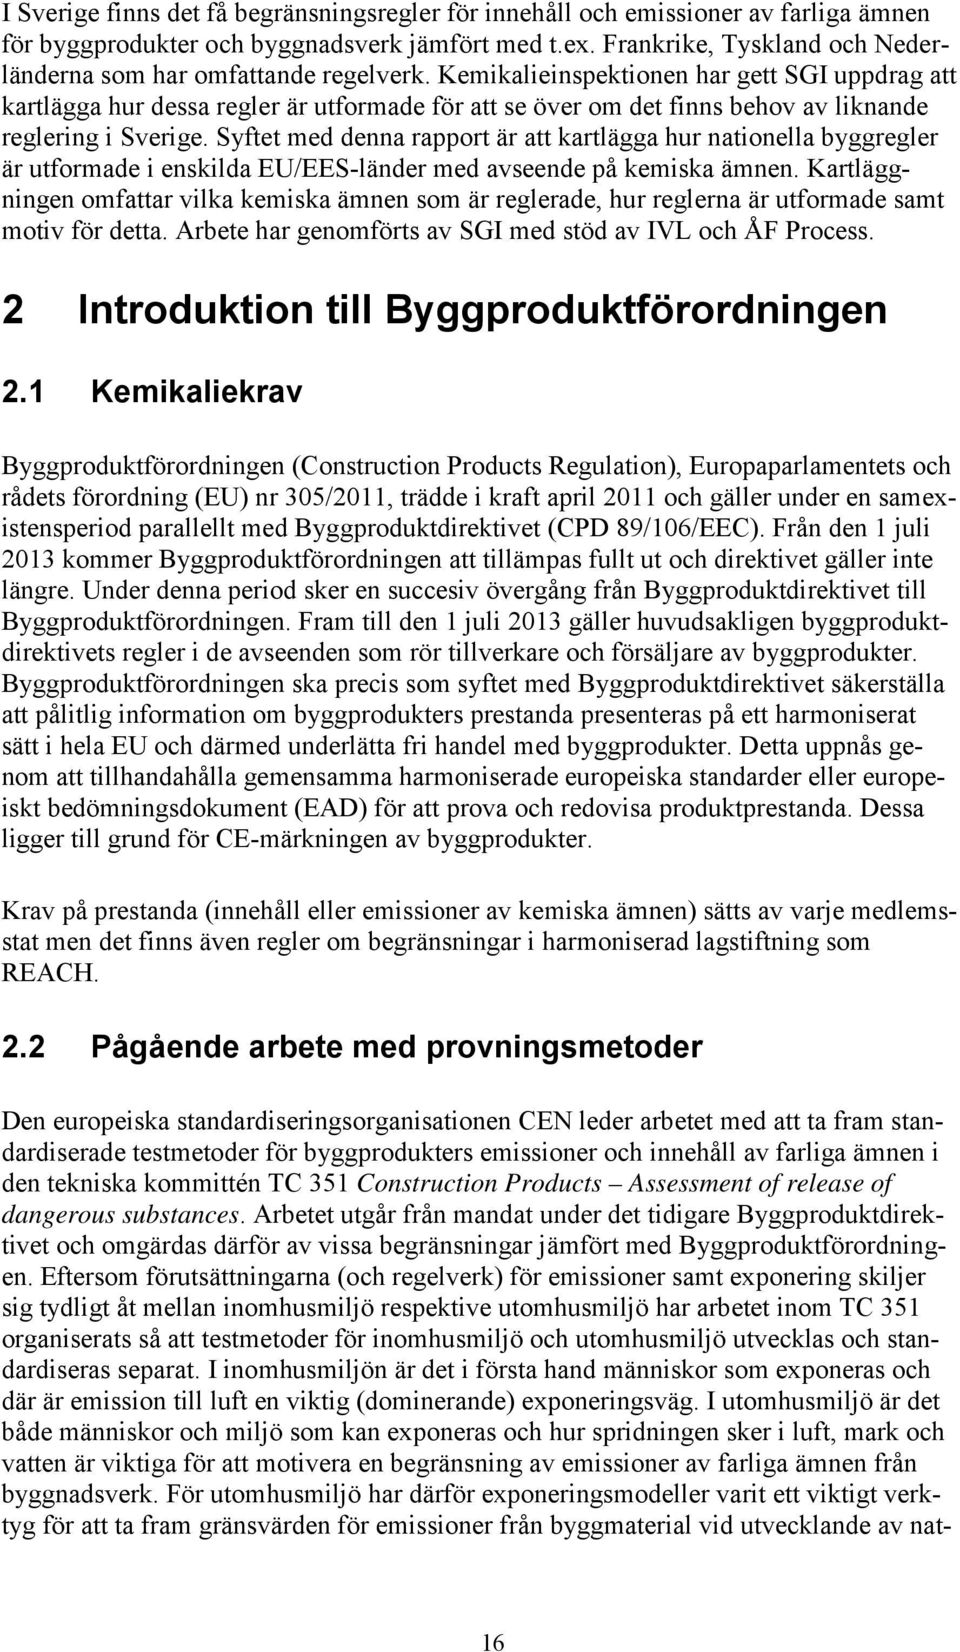 Kemikalieinspektionen har gett SGI uppdrag att kartlägga hur dessa regler är utformade för att se över om det finns behov av liknande reglering i Sverige.